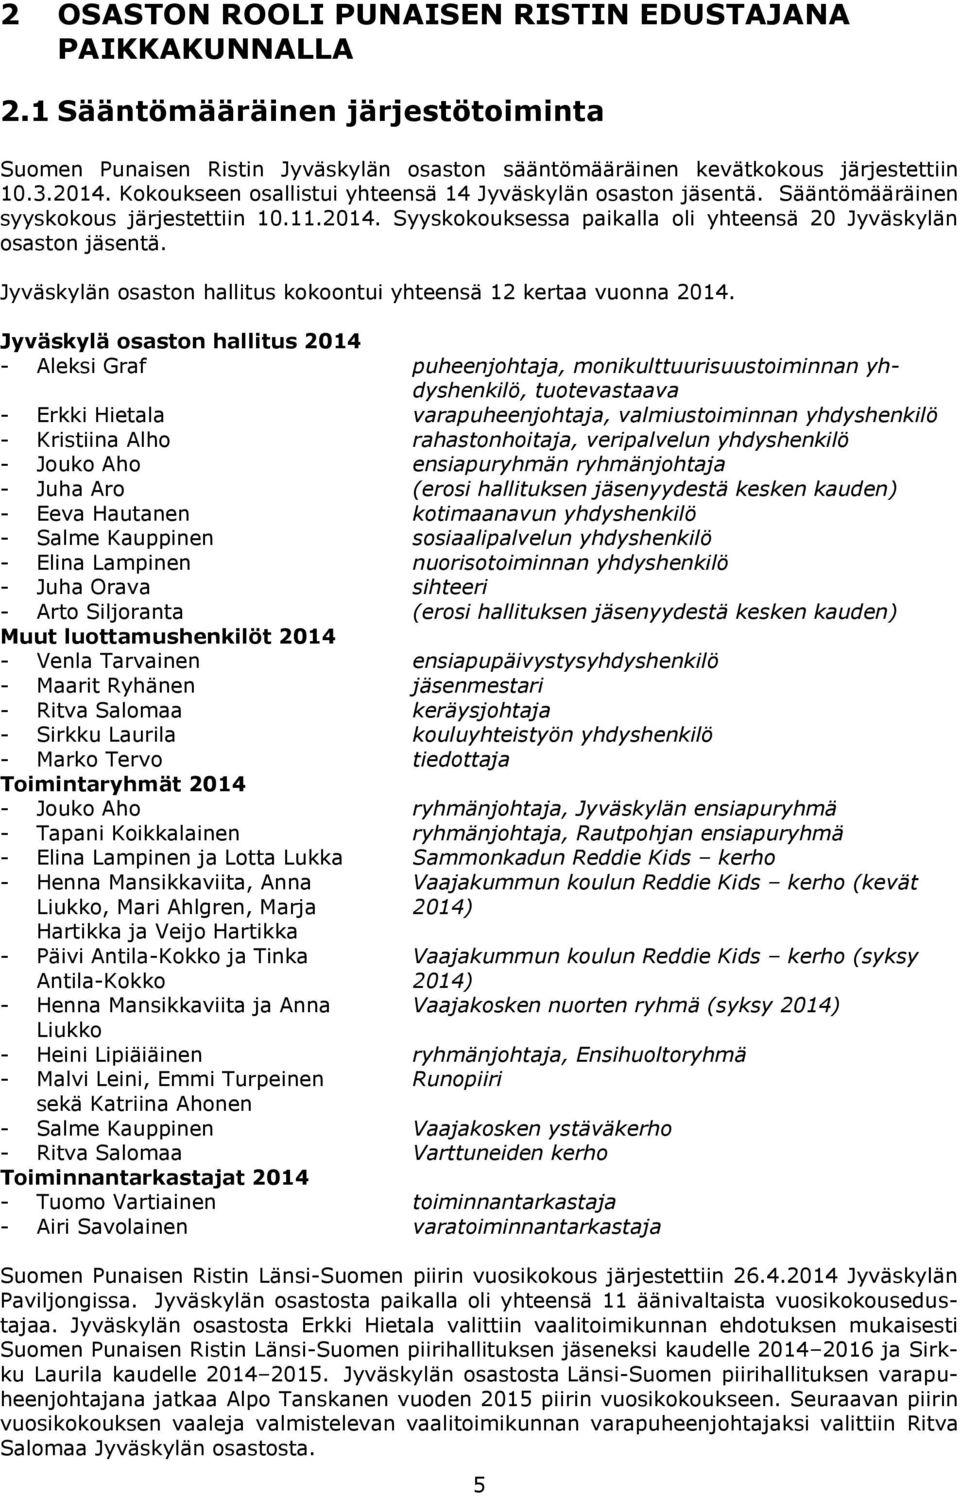 Jyväskylän osaston hallitus kokoontui yhteensä 12 kertaa vuonna 2014.